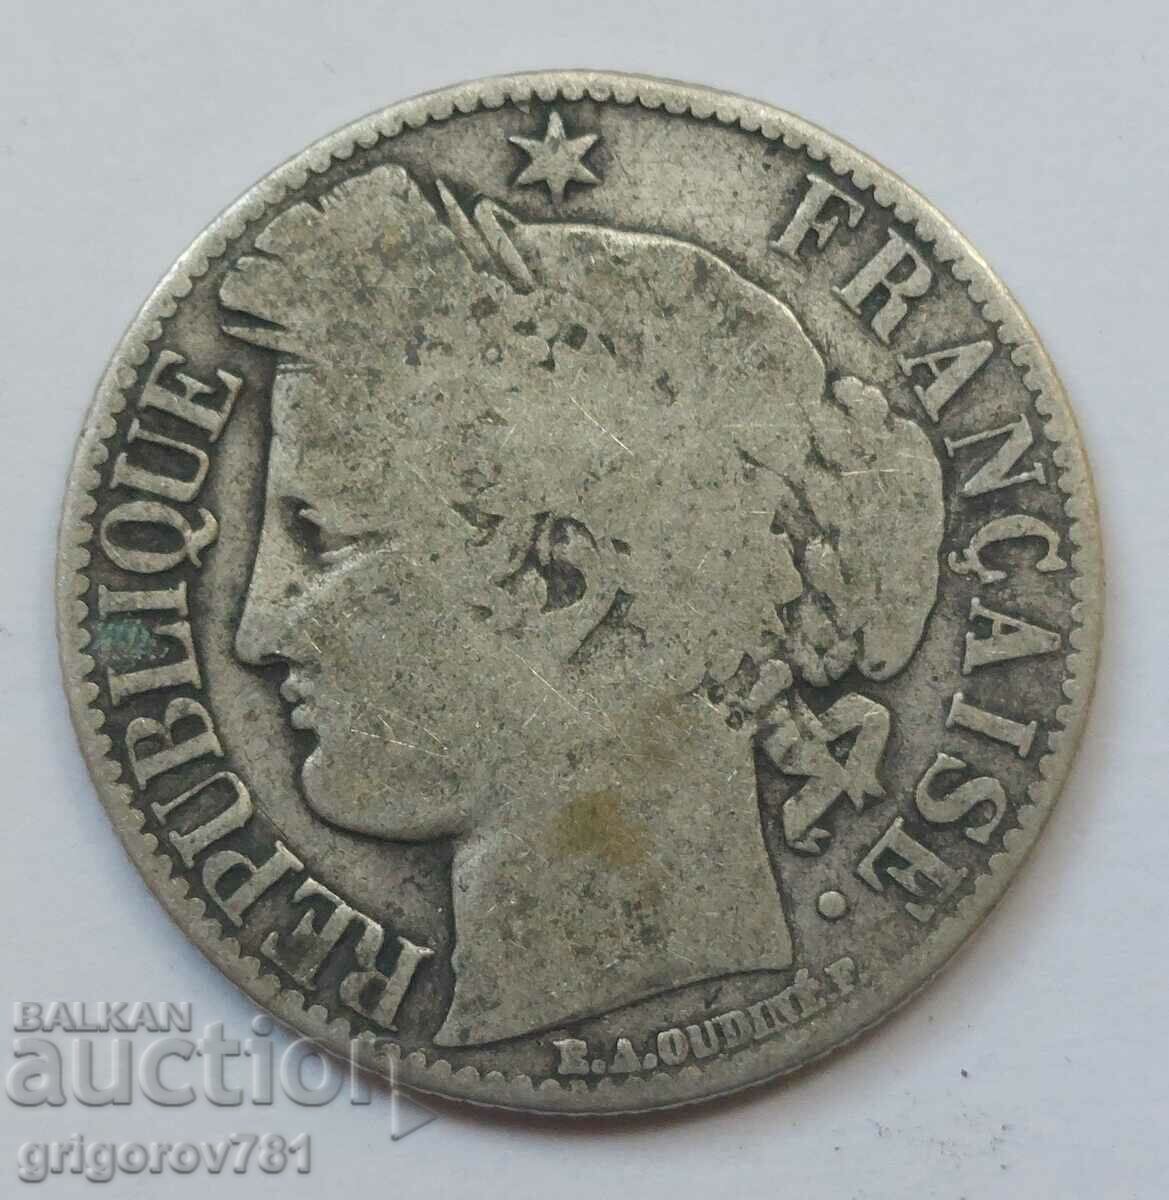 Ασήμι 1 φράγκου Γαλλία 1872 K - Ασημένιο νόμισμα #49